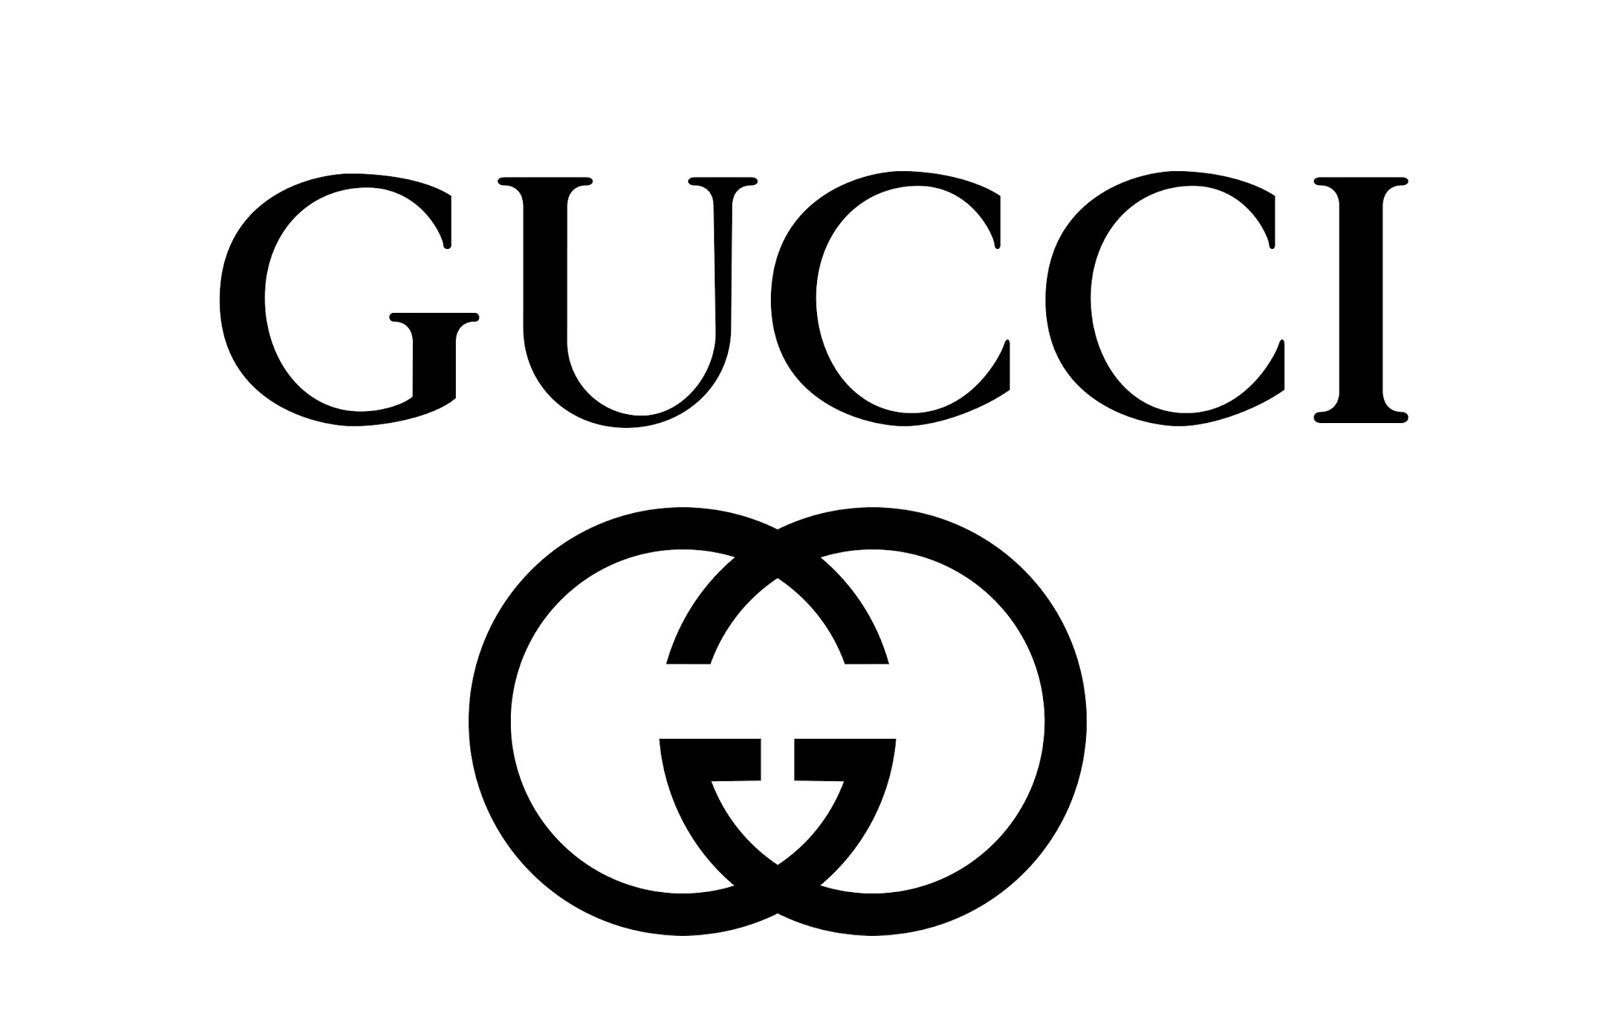 Guccio Gucci - Wikipedia